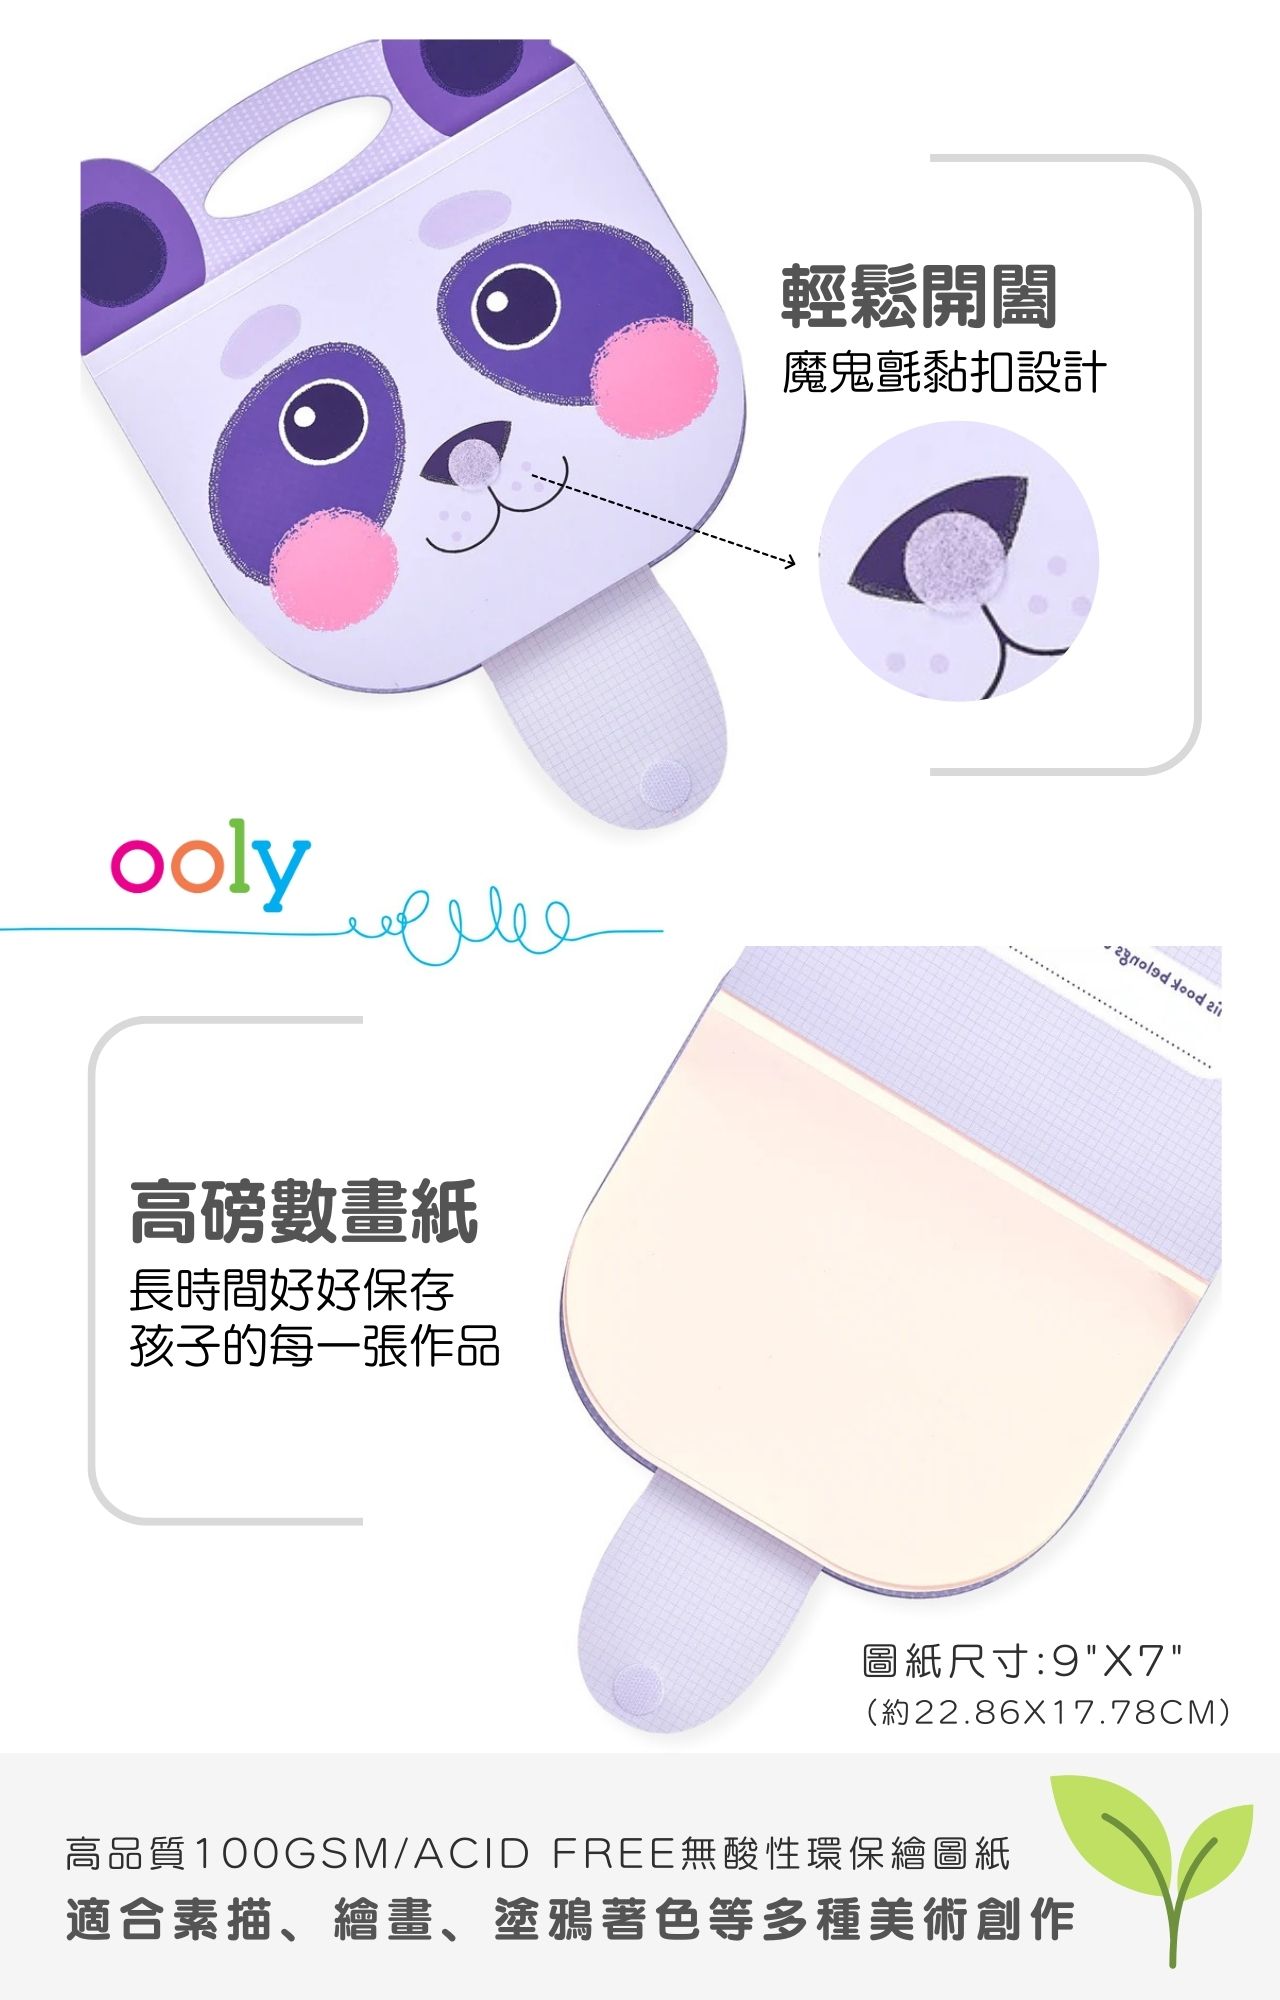 美國ooly可愛動物造型畫本系列-熊貓款_產品說明圖 (3)